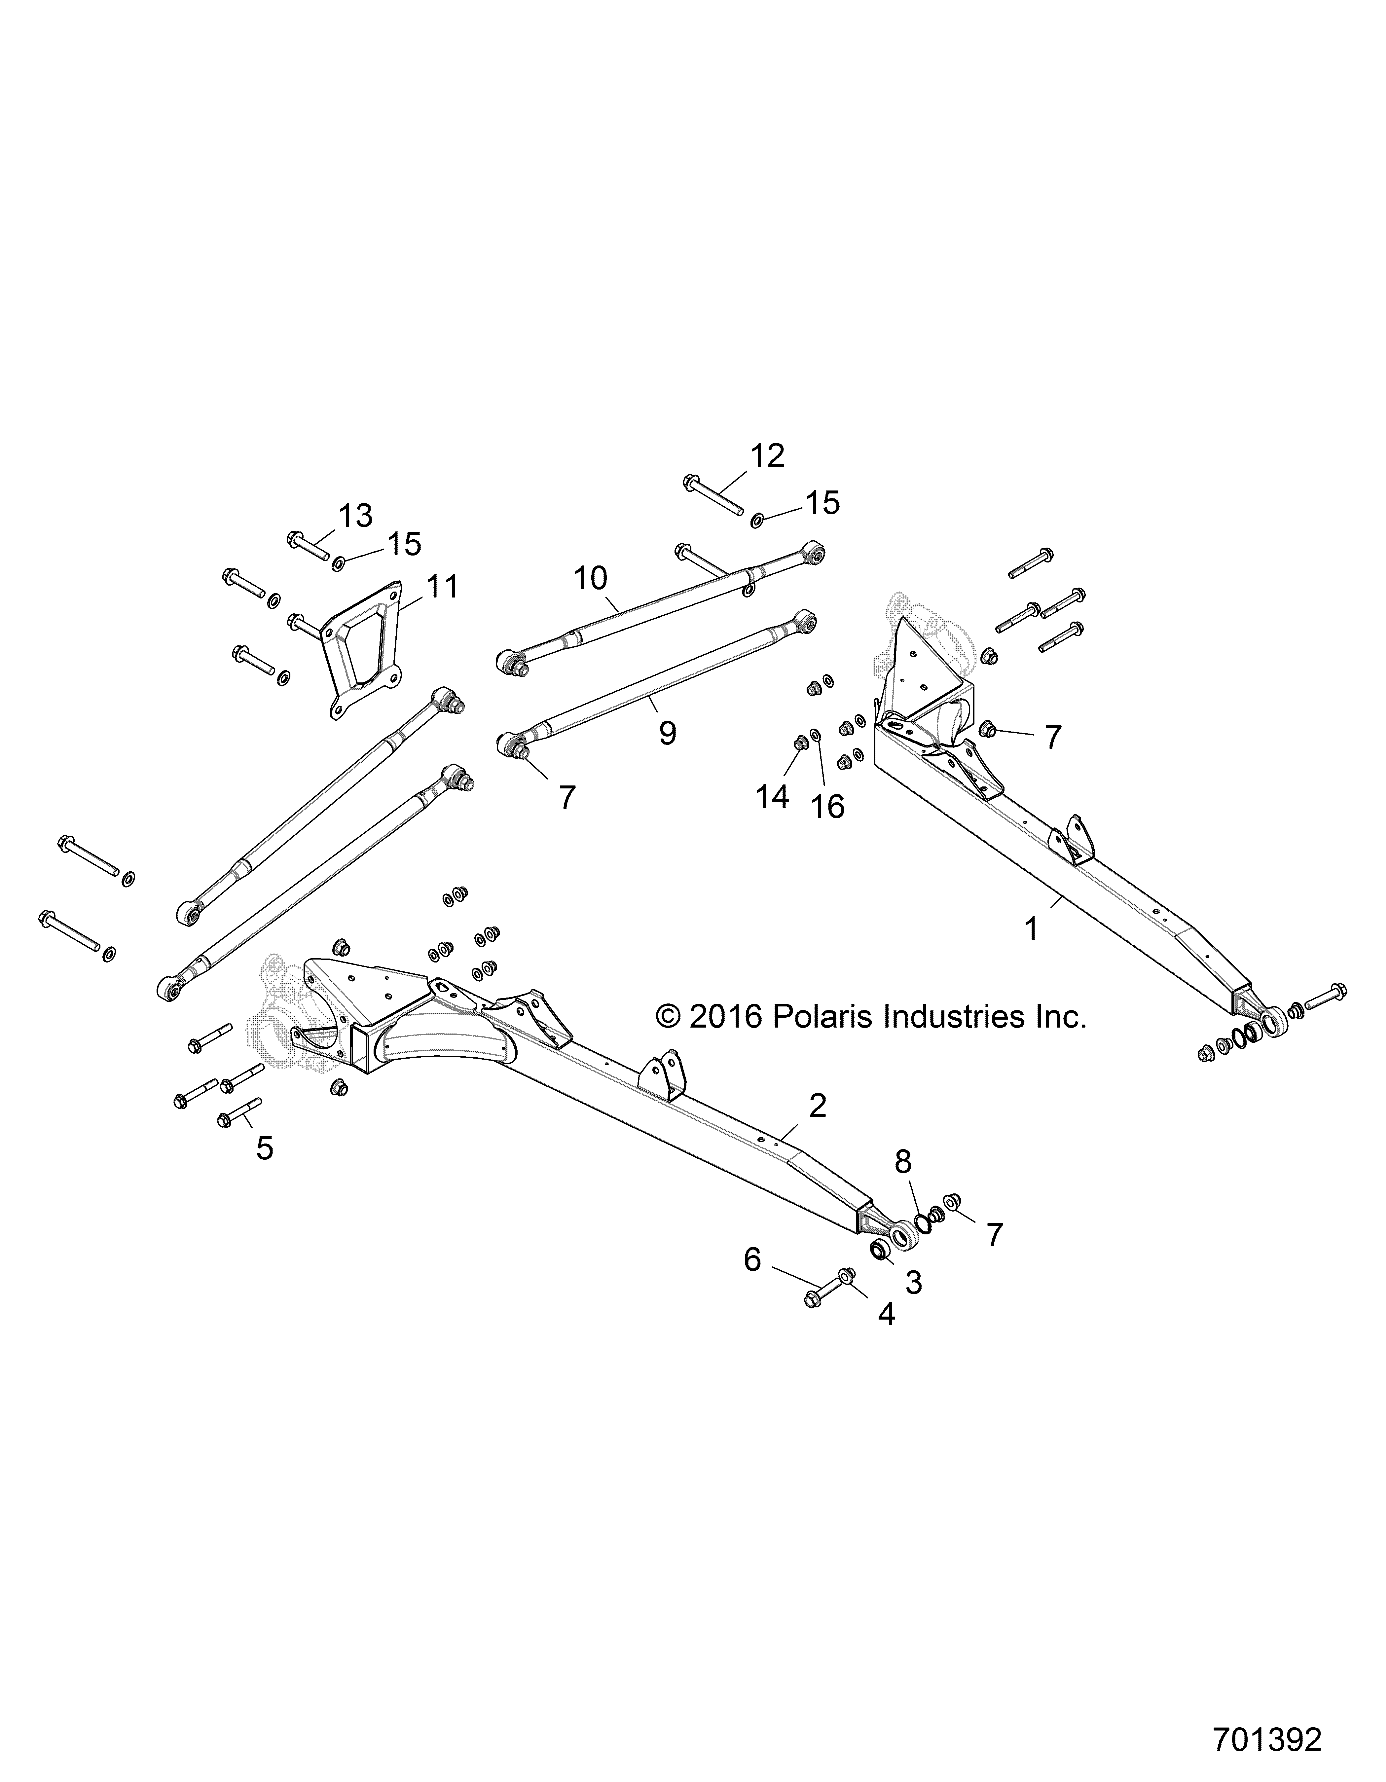 SUSPENSION, REAR CONTROL ARMS - Z18VFE92NB/NU (701392)